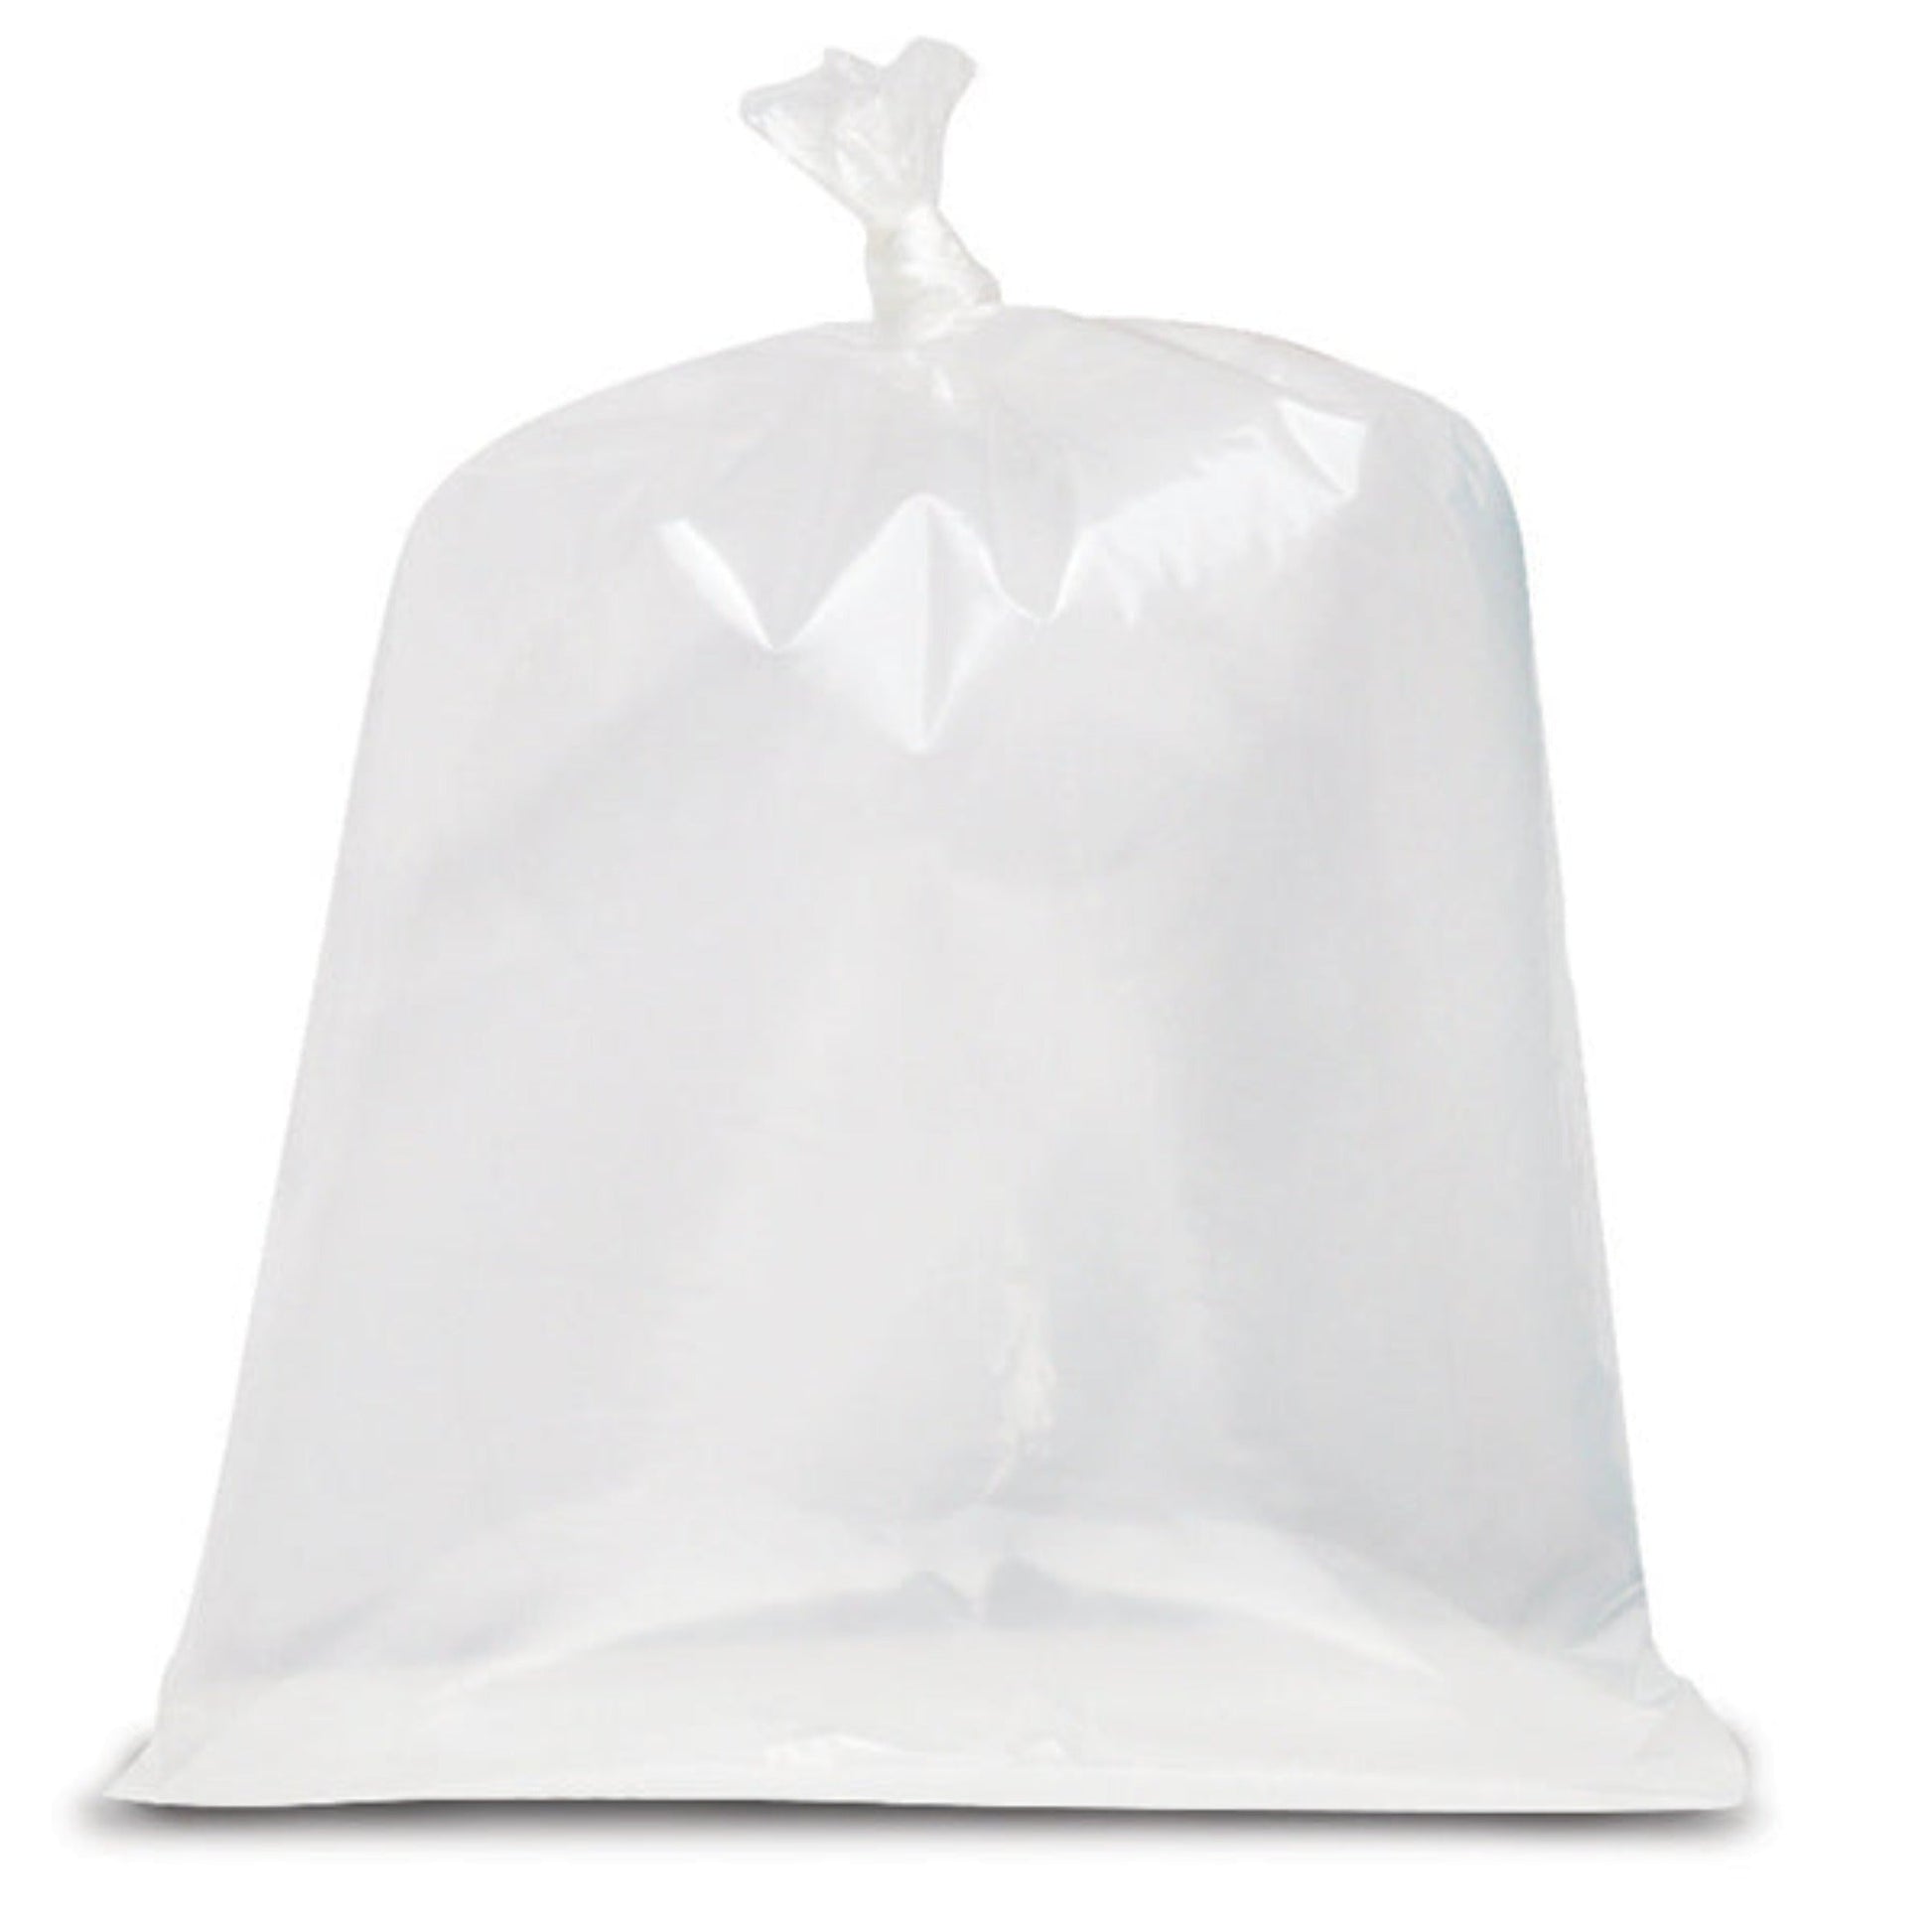 35x47 Garbage Bags / White